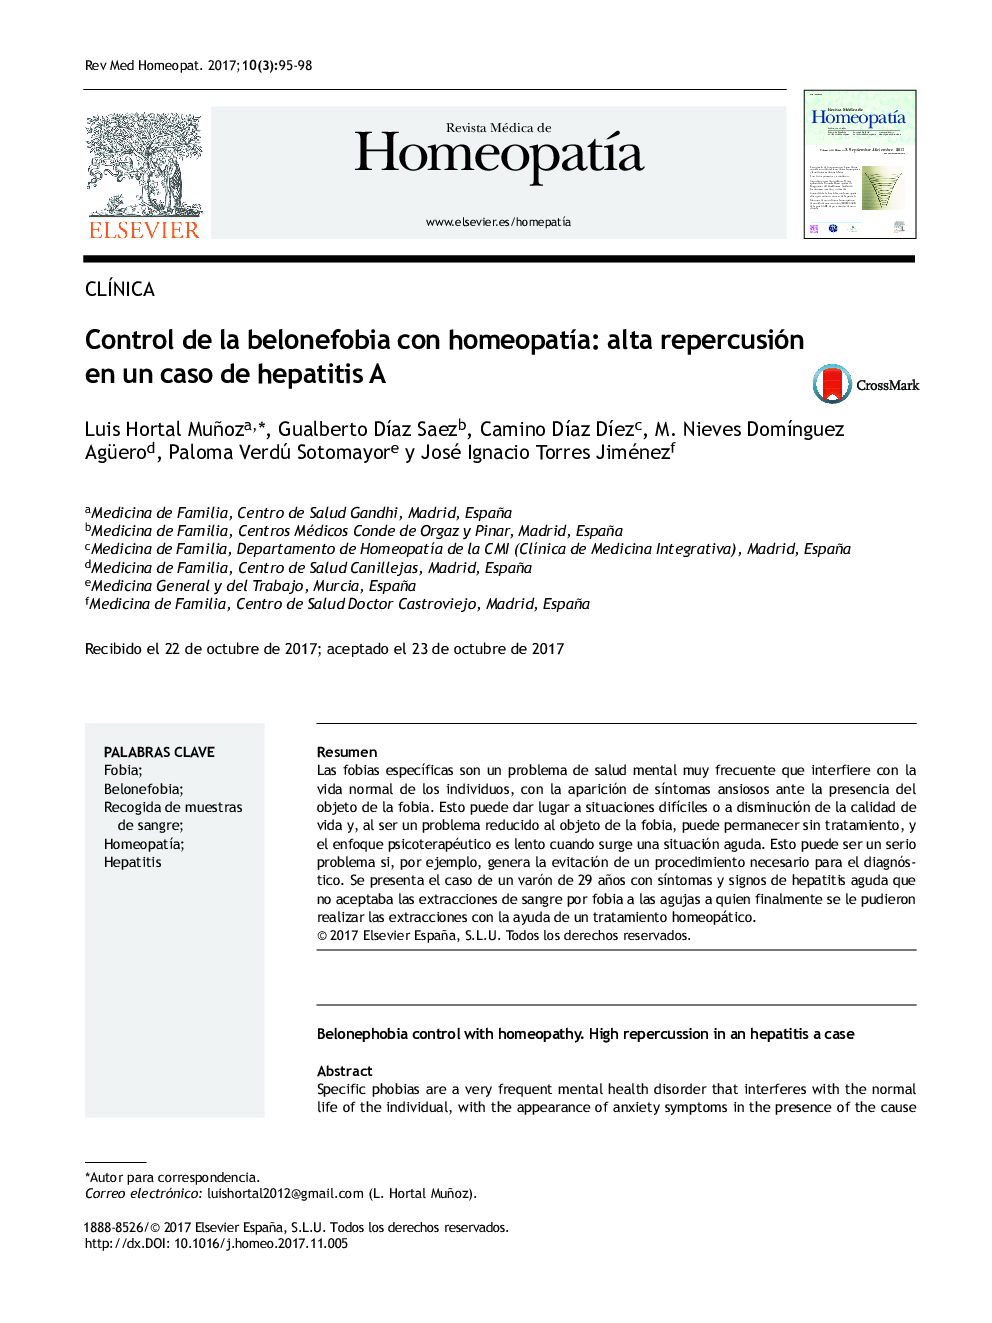 Control de la belonefobia con homeopatÃ­a: alta repercusión en un caso de hepatitis A